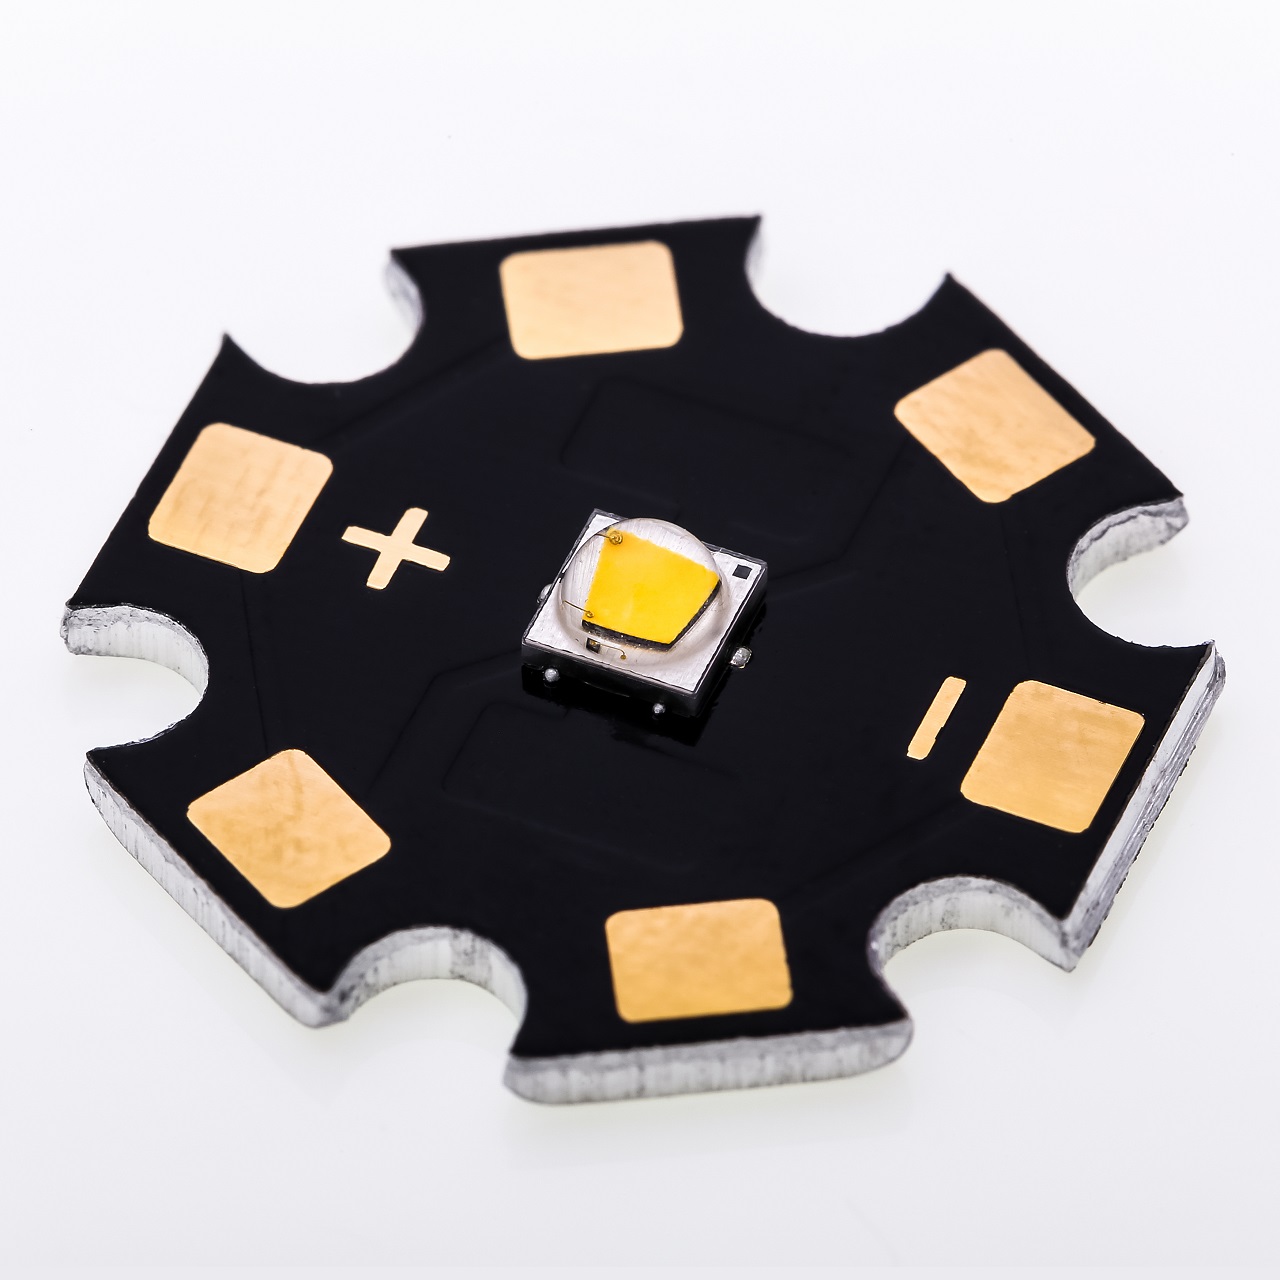 Was ist ein LED-Chip? Welche Typen werden verwendet?